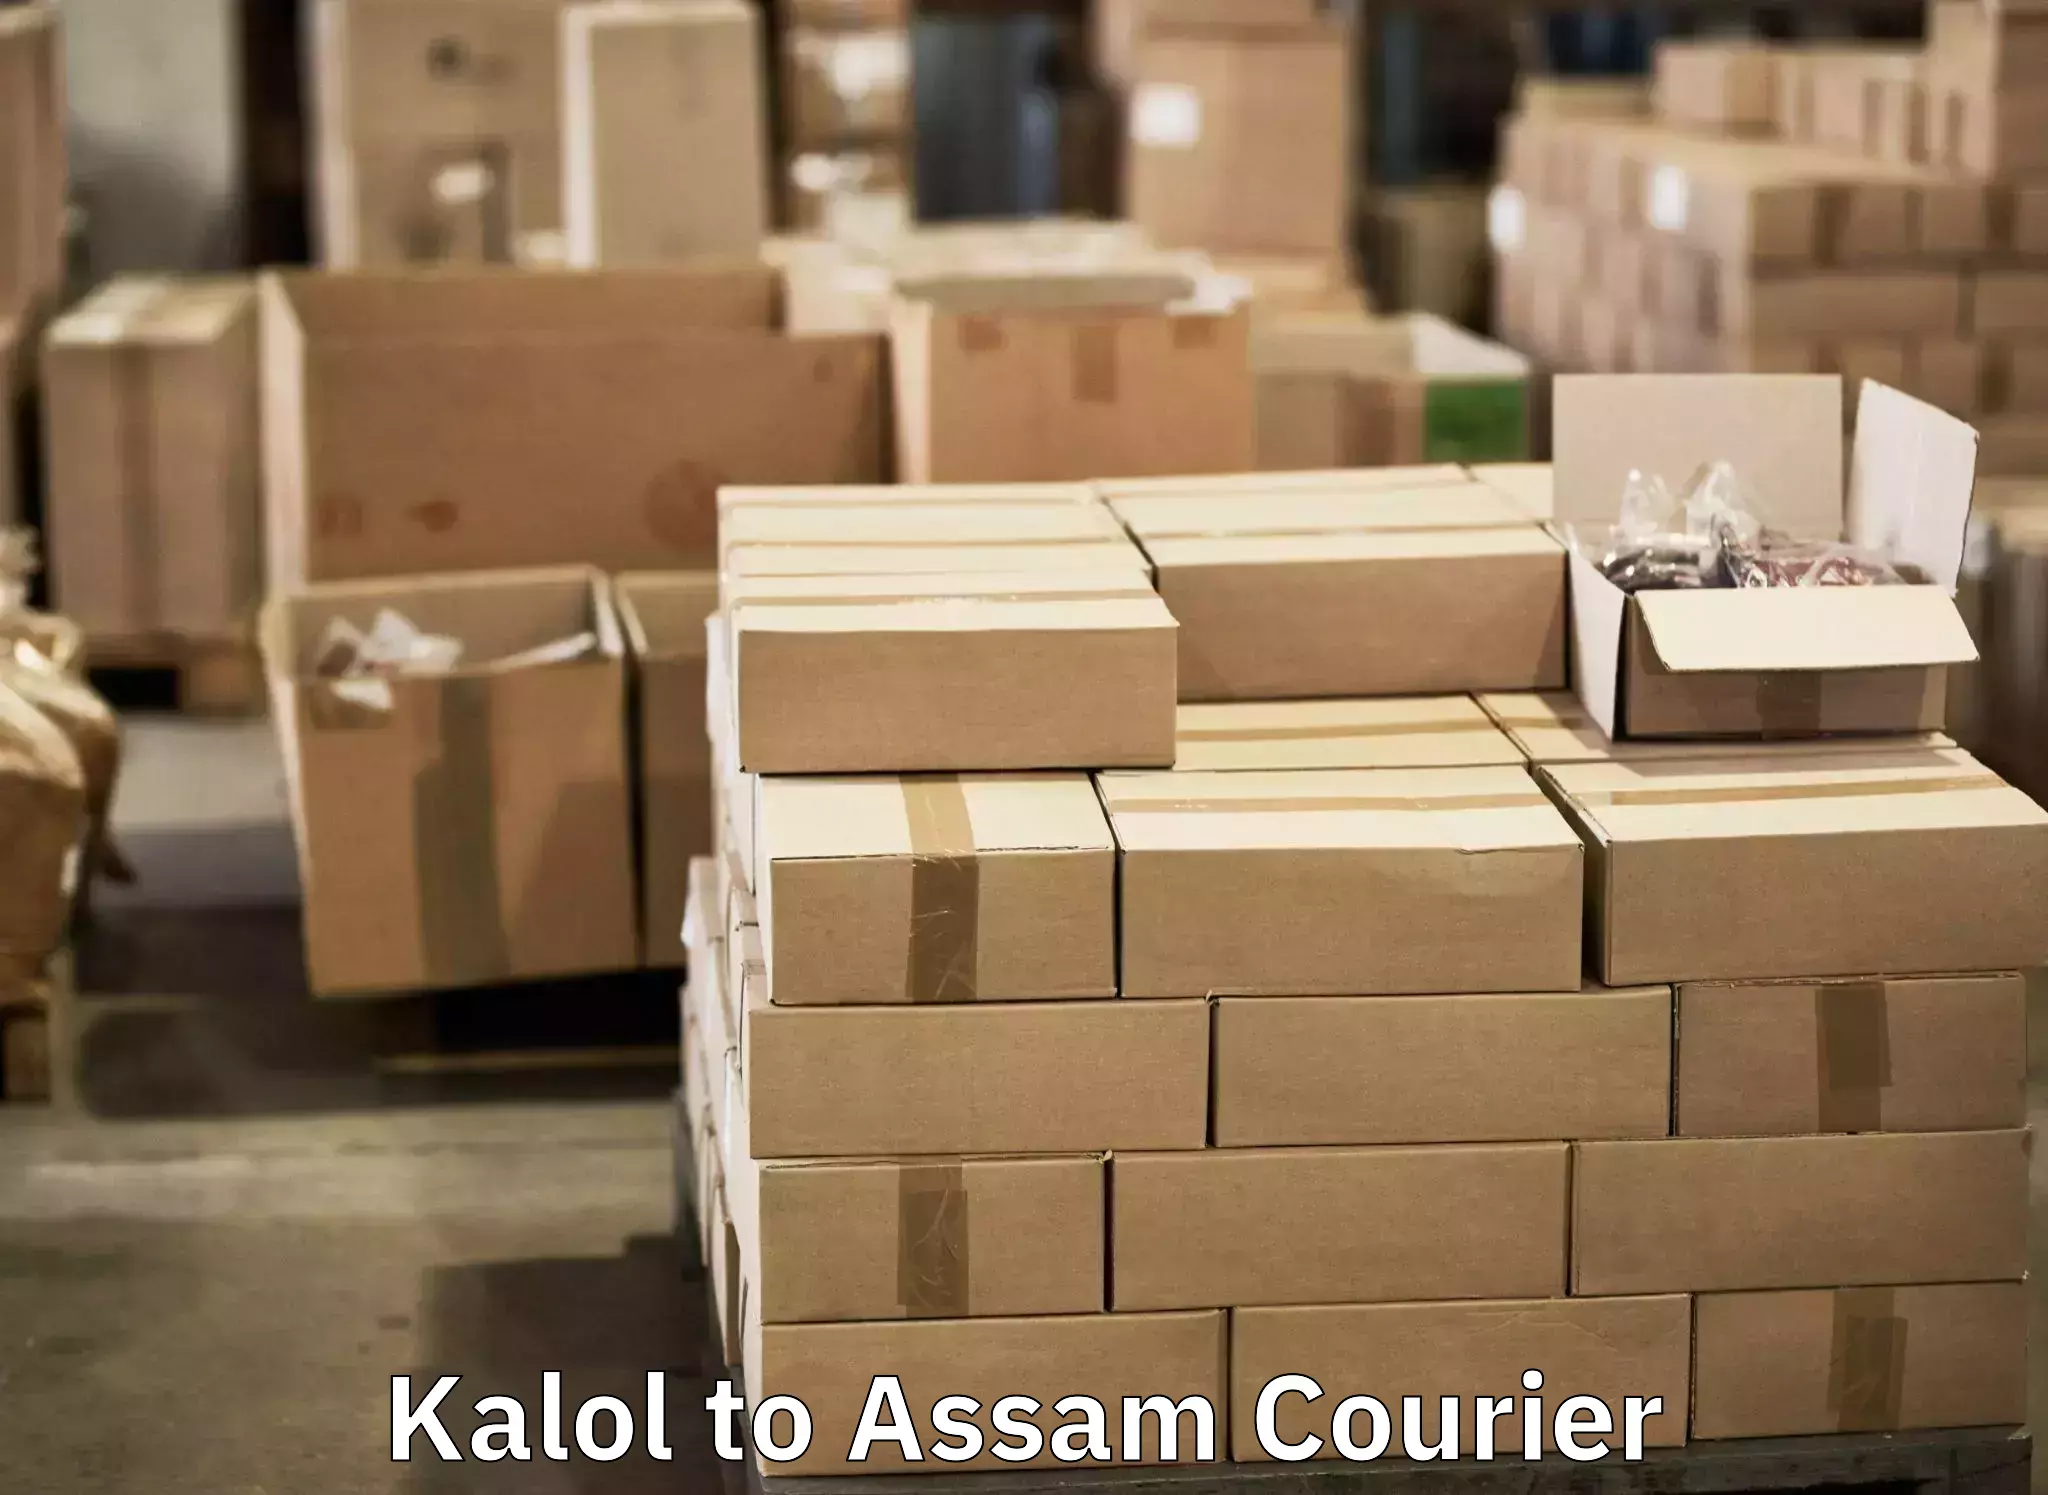 Luggage shipment tracking Kalol to Ramkrishna Nagar Karimganj